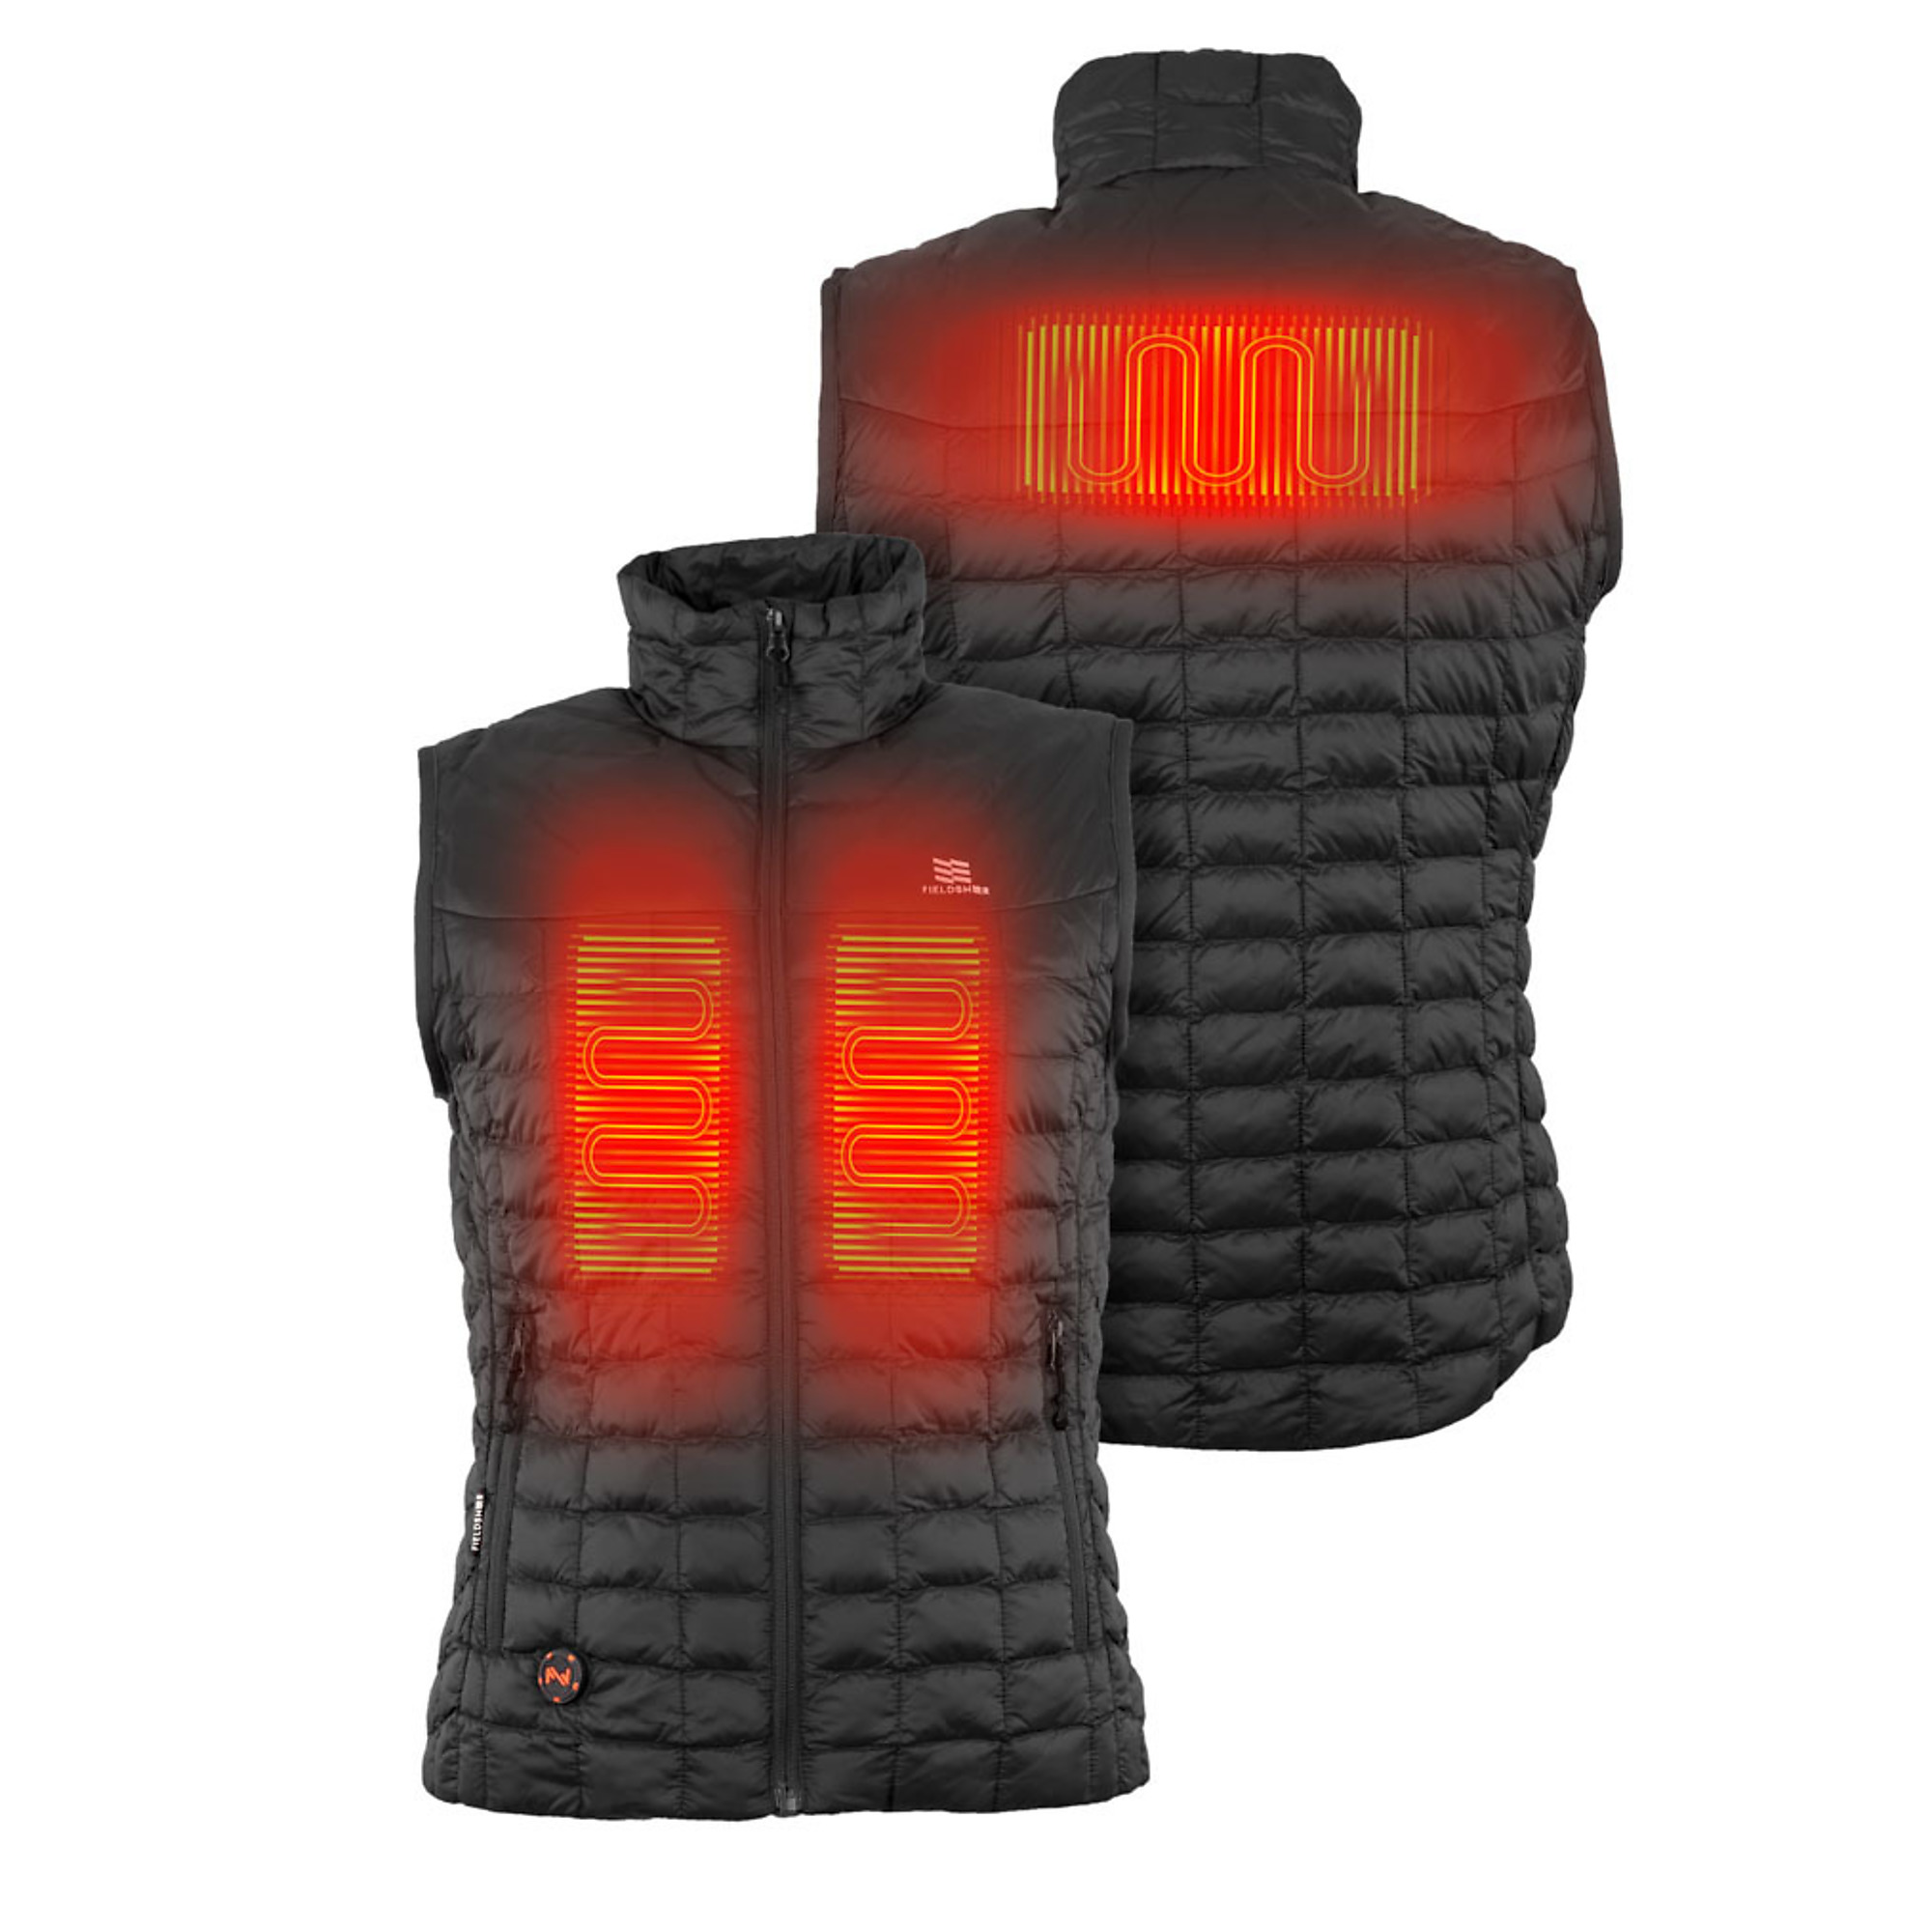 Fieldsheer, Women's 7.4v Backcountry Heated Vest, Size S, Color Black, Model MWWV04010220